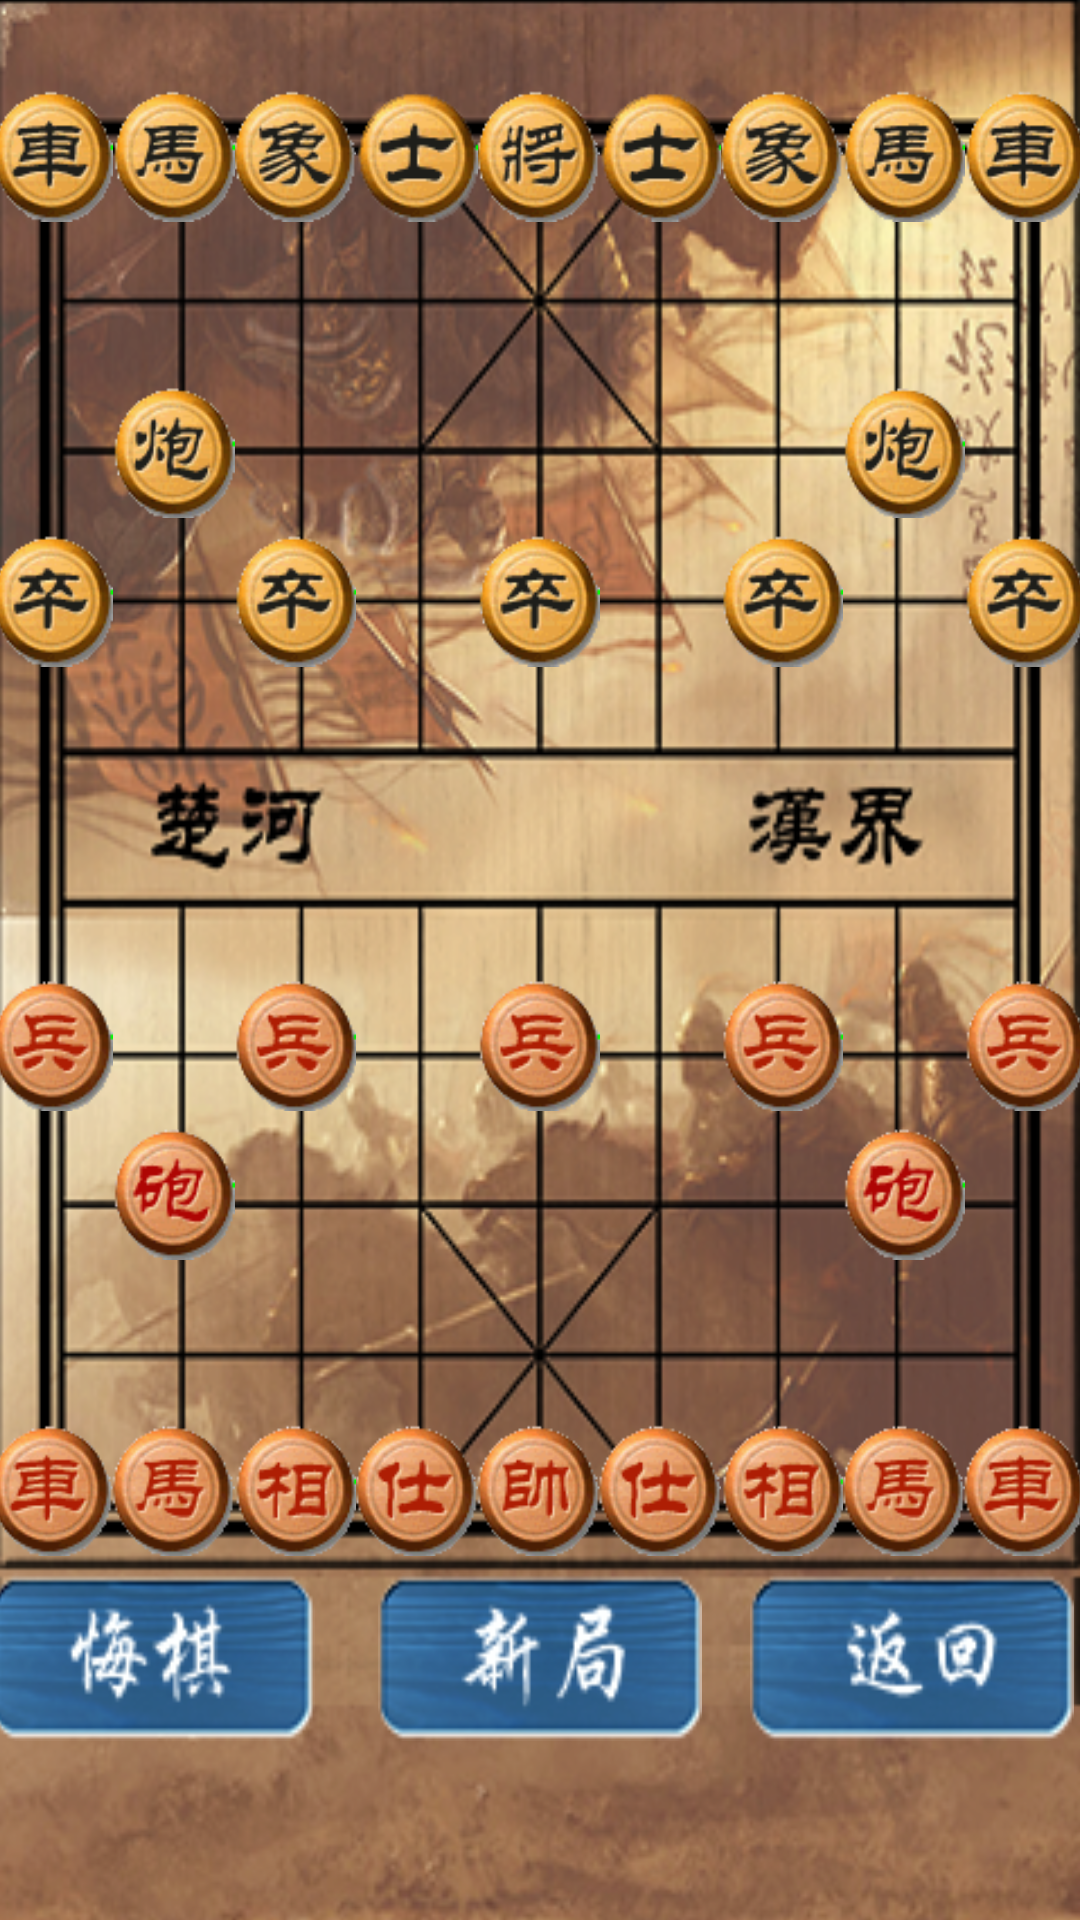 中国象棋修改版截图(2)